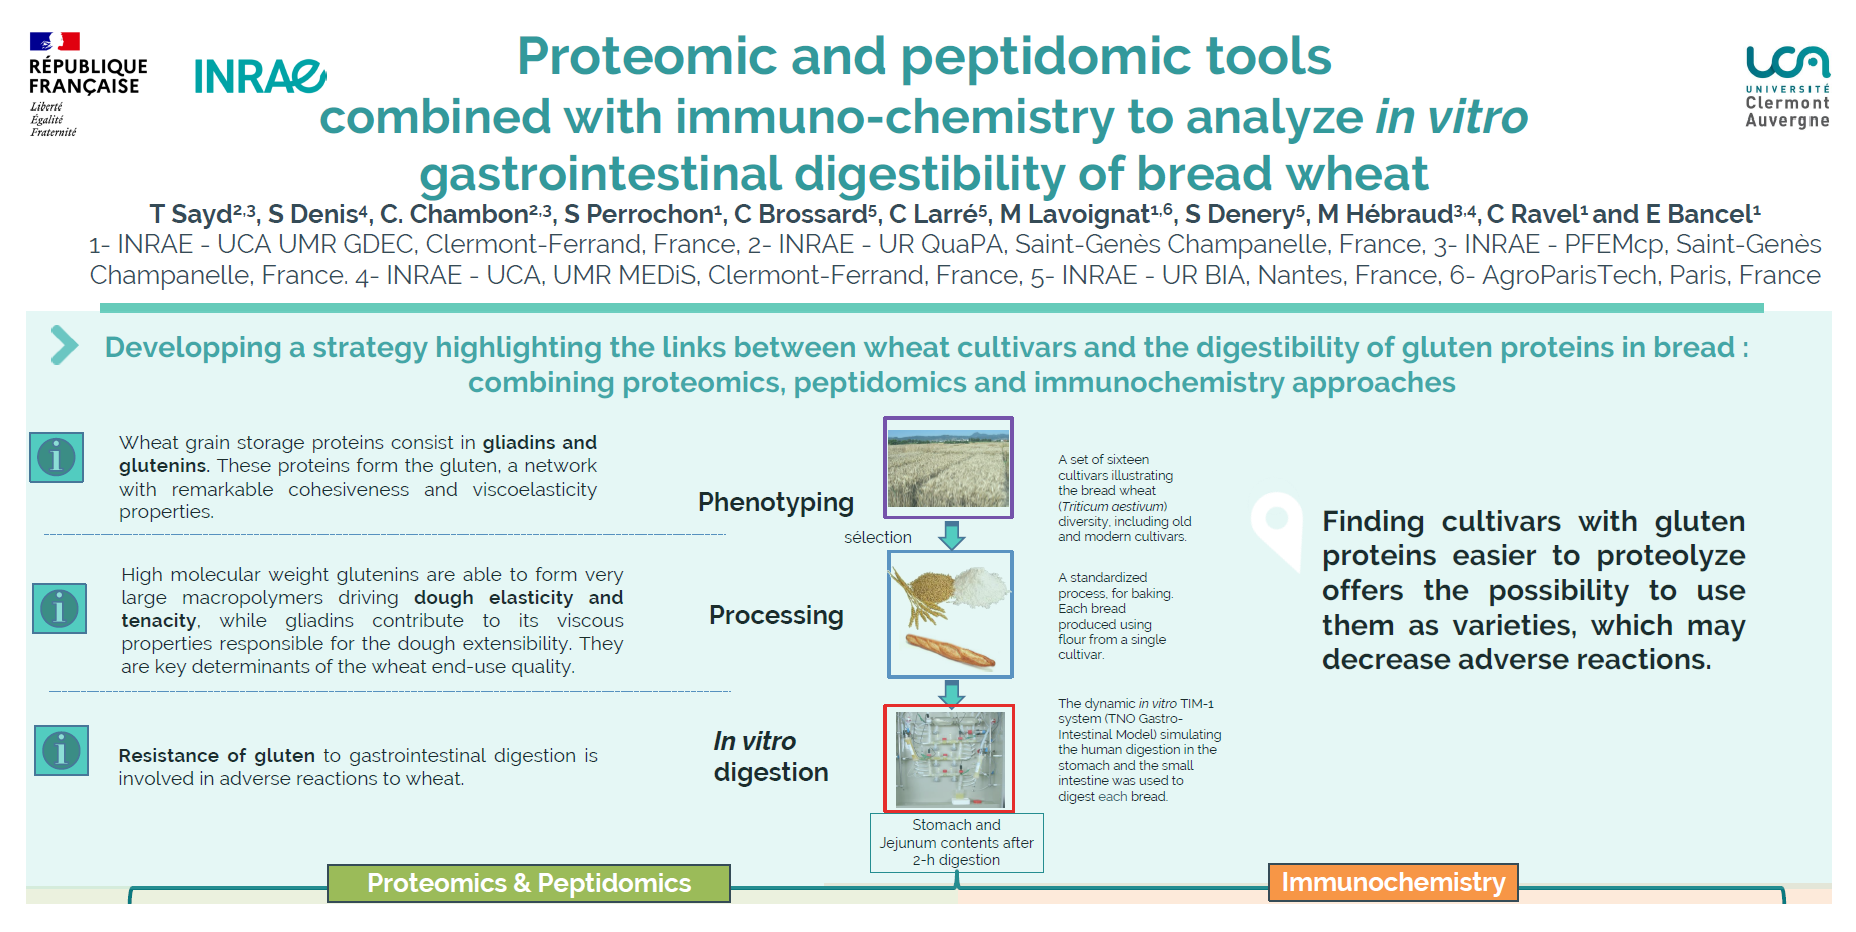 Outils protéomiques et peptidomiques pour analyser la digestibilité gastro-intestinale du blé panifiable in-vitro